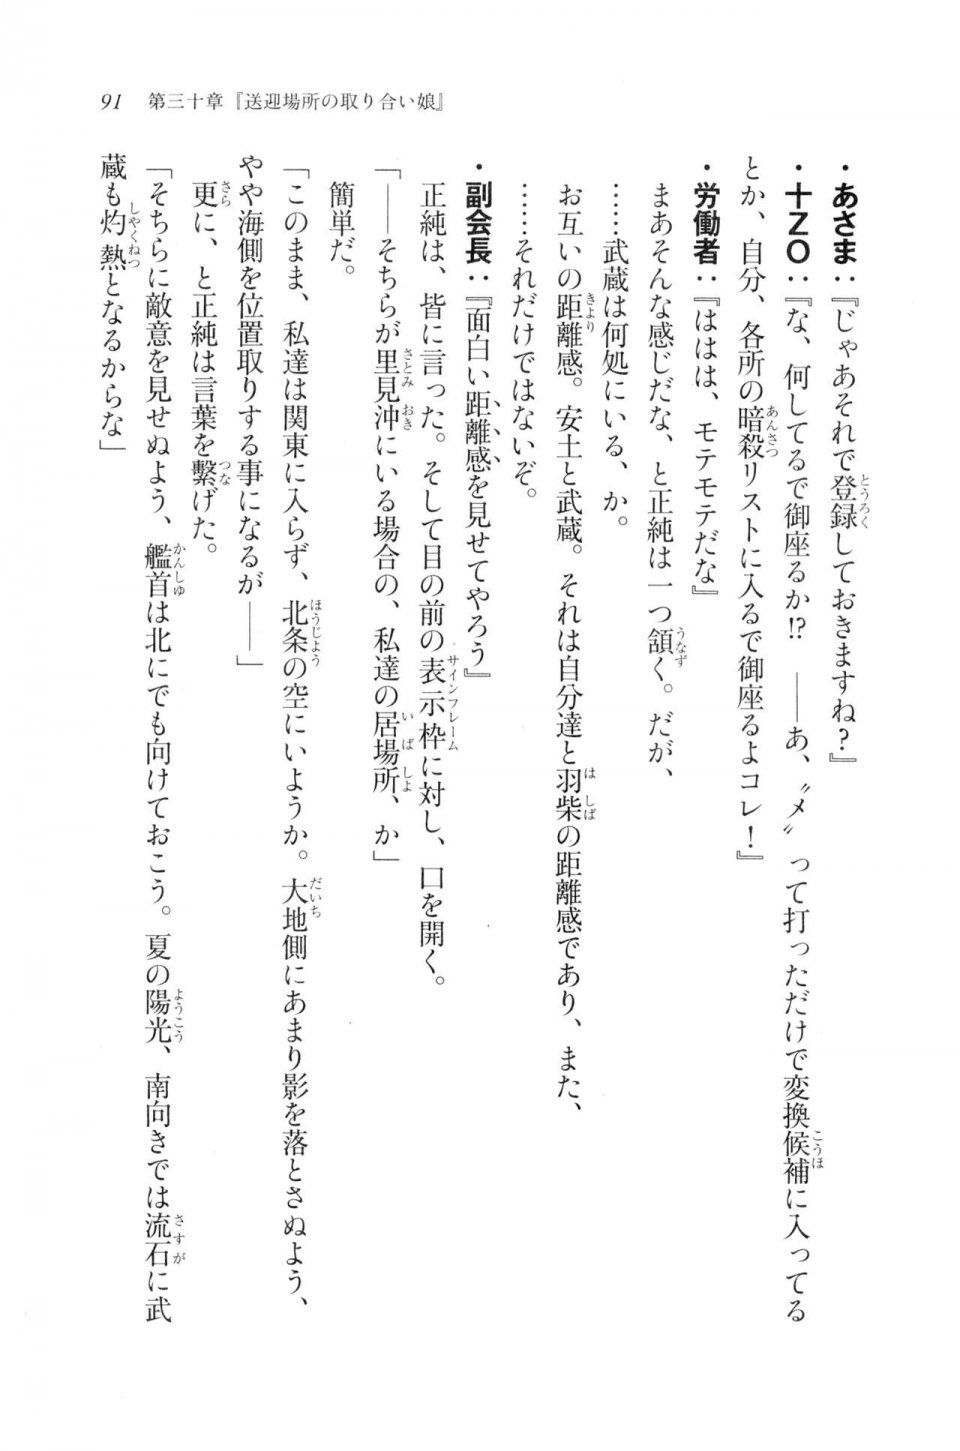 Kyoukai Senjou no Horizon LN Vol 20(8B) - Photo #91